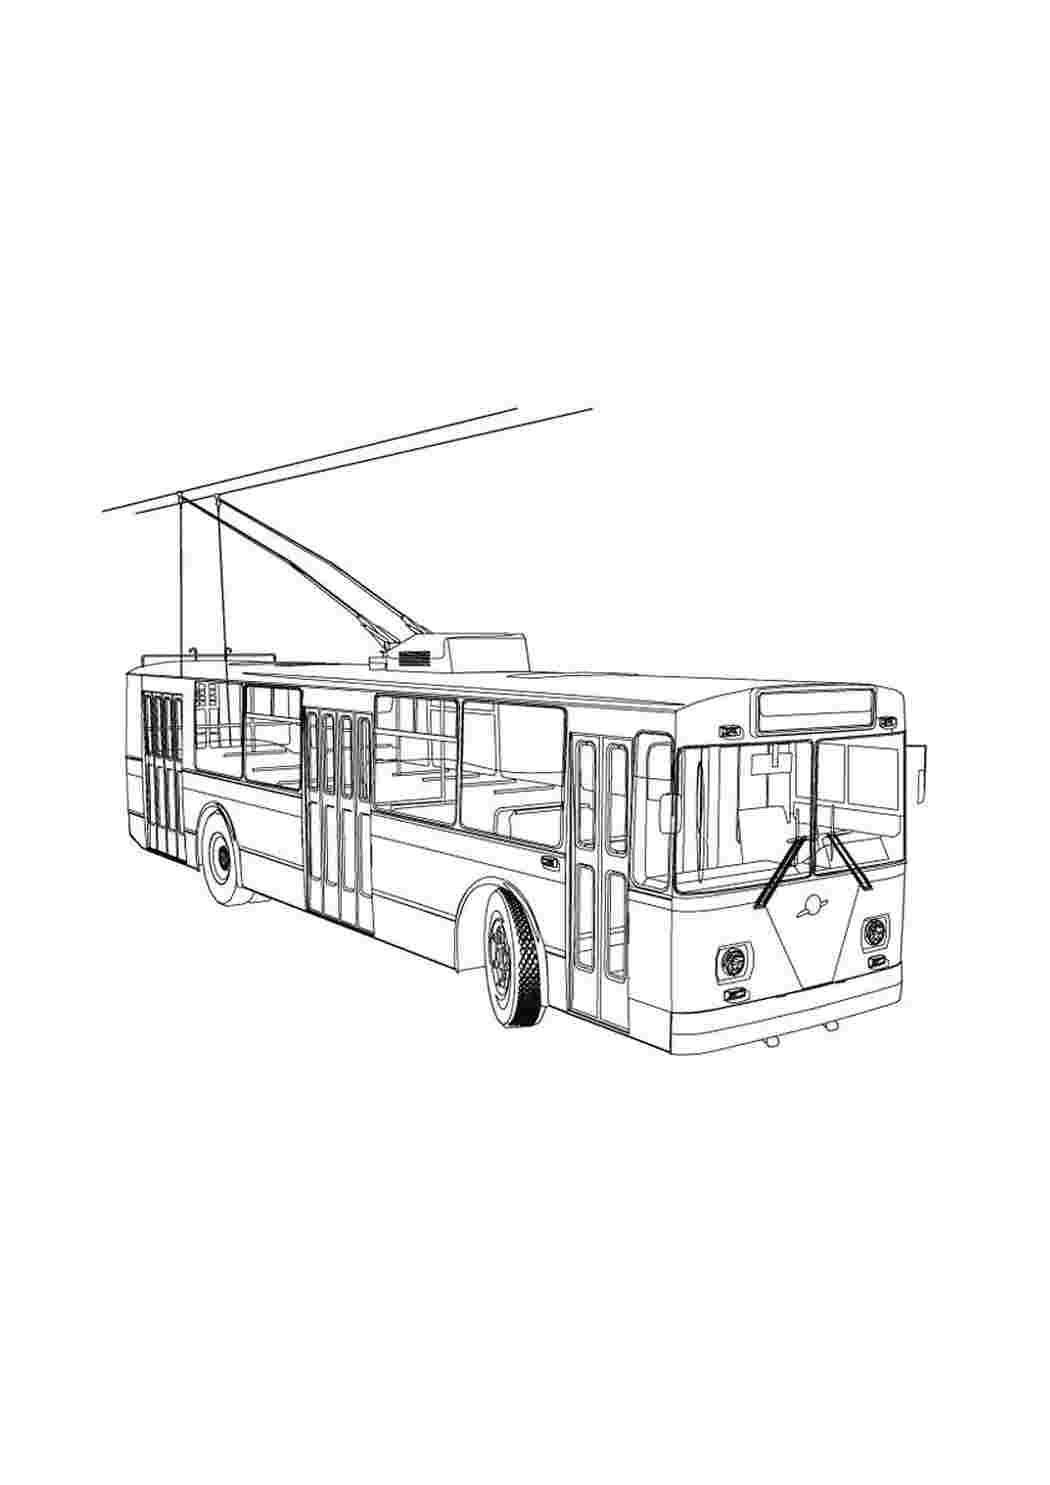 Как нарисовать троллейбус